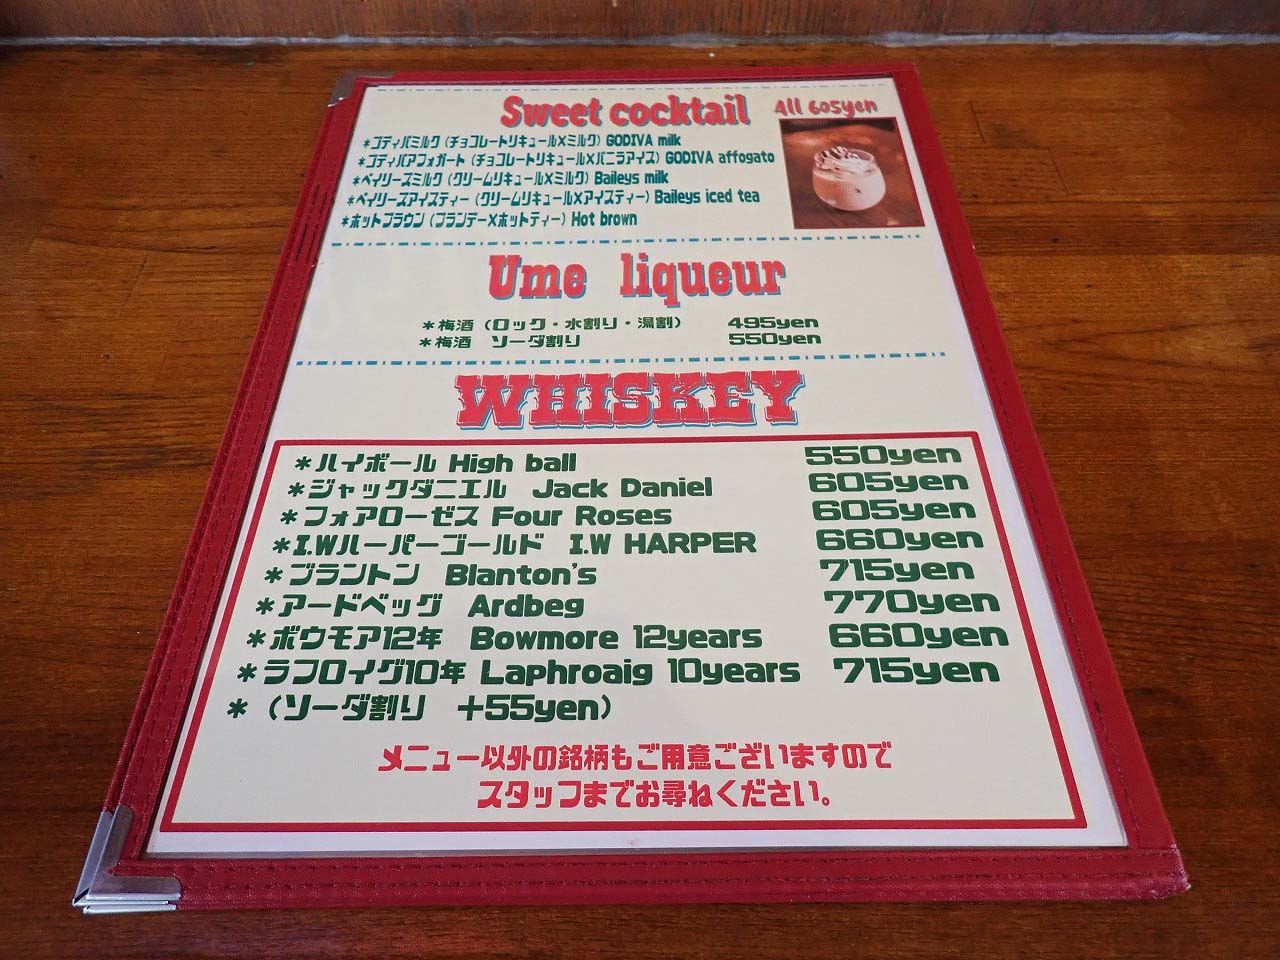 川越で人気のパンケーキのお店『カフェ マチルダ』